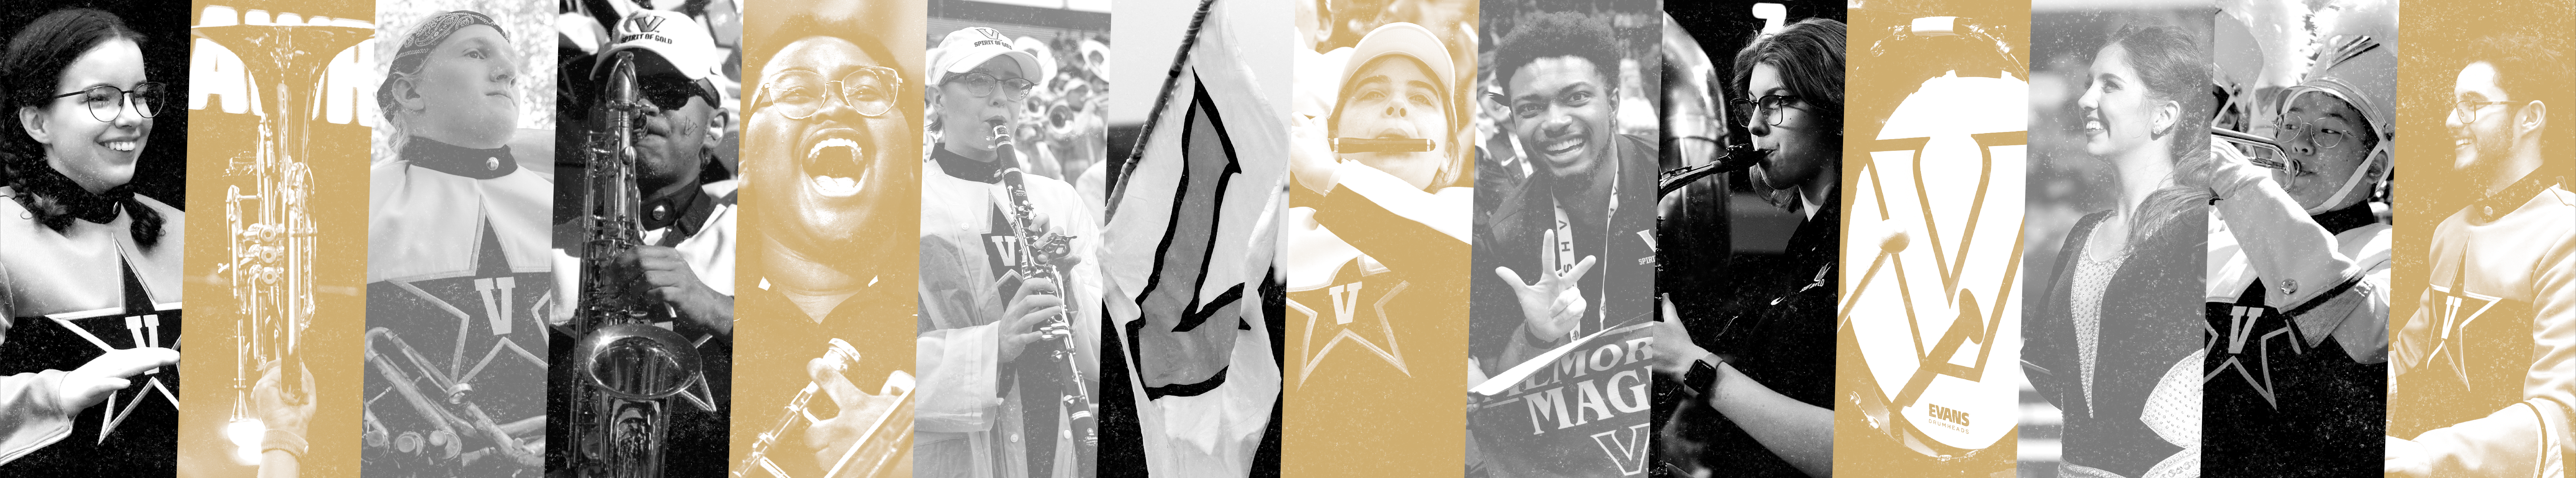 Vanderbilt Athletic Bands collage